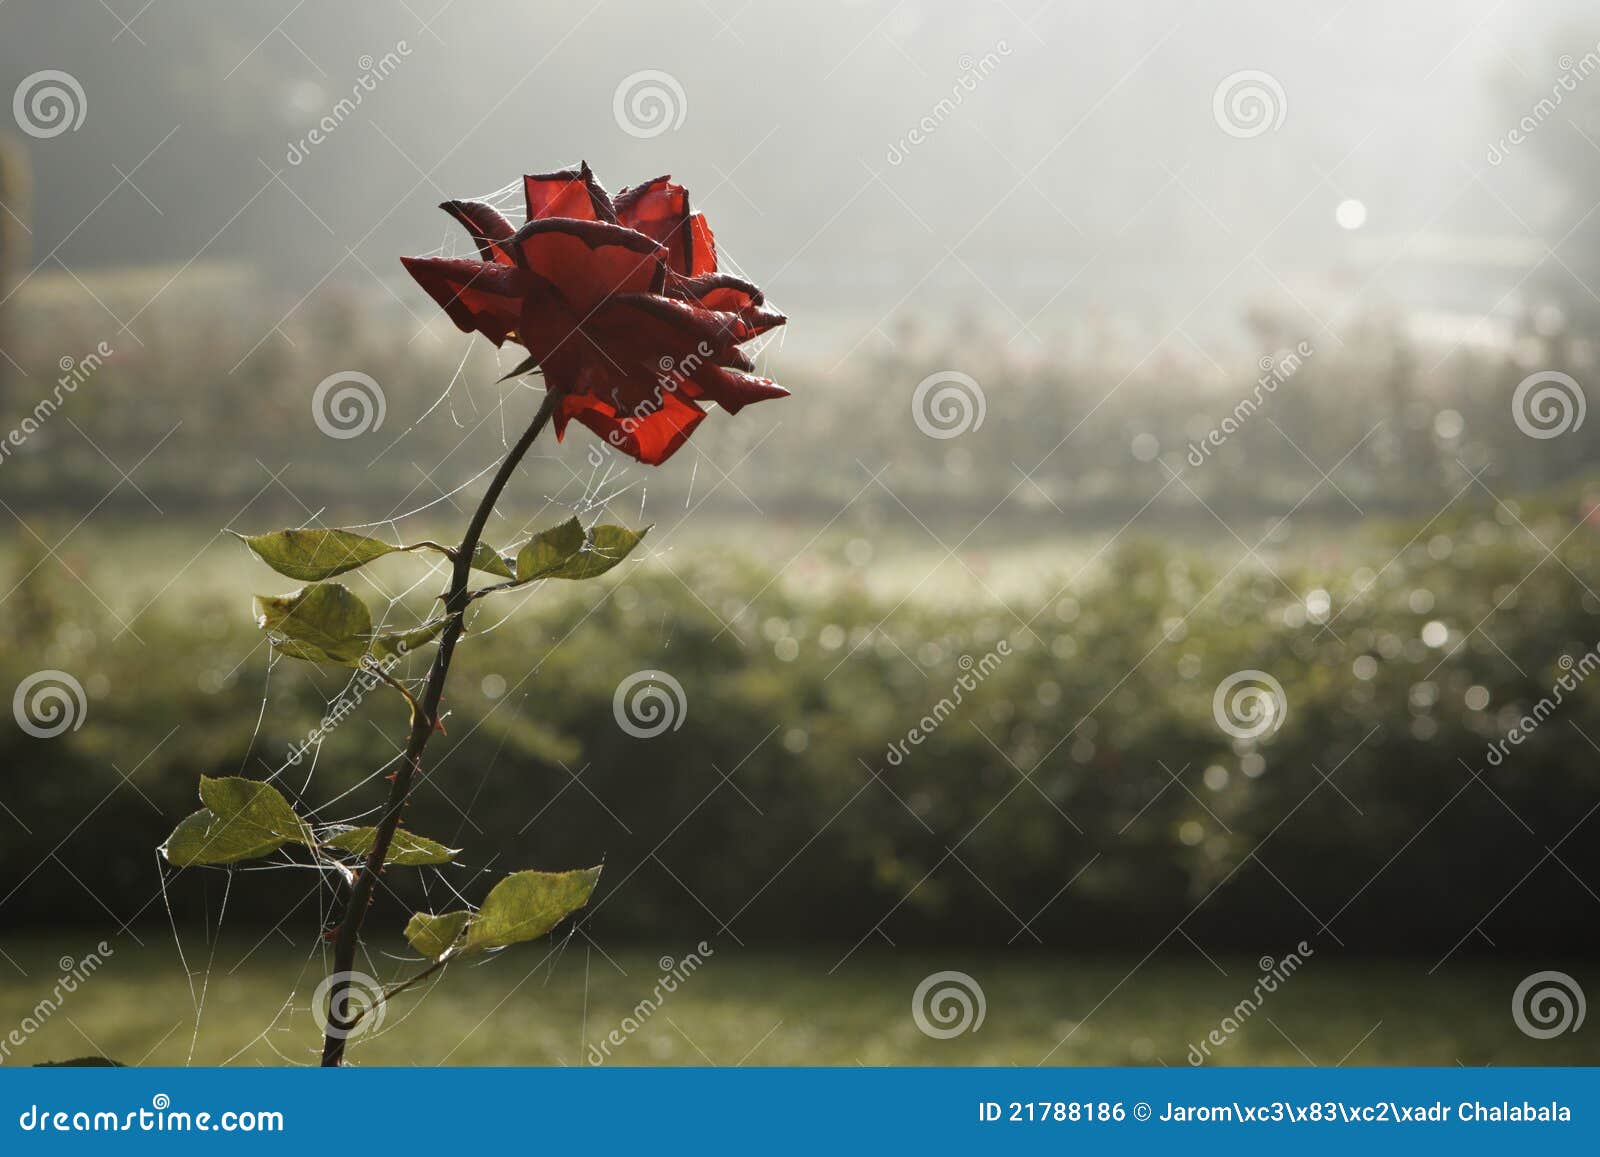 Sad Rose Stock Photo Image Of Decline Depression Gloomy 21788186